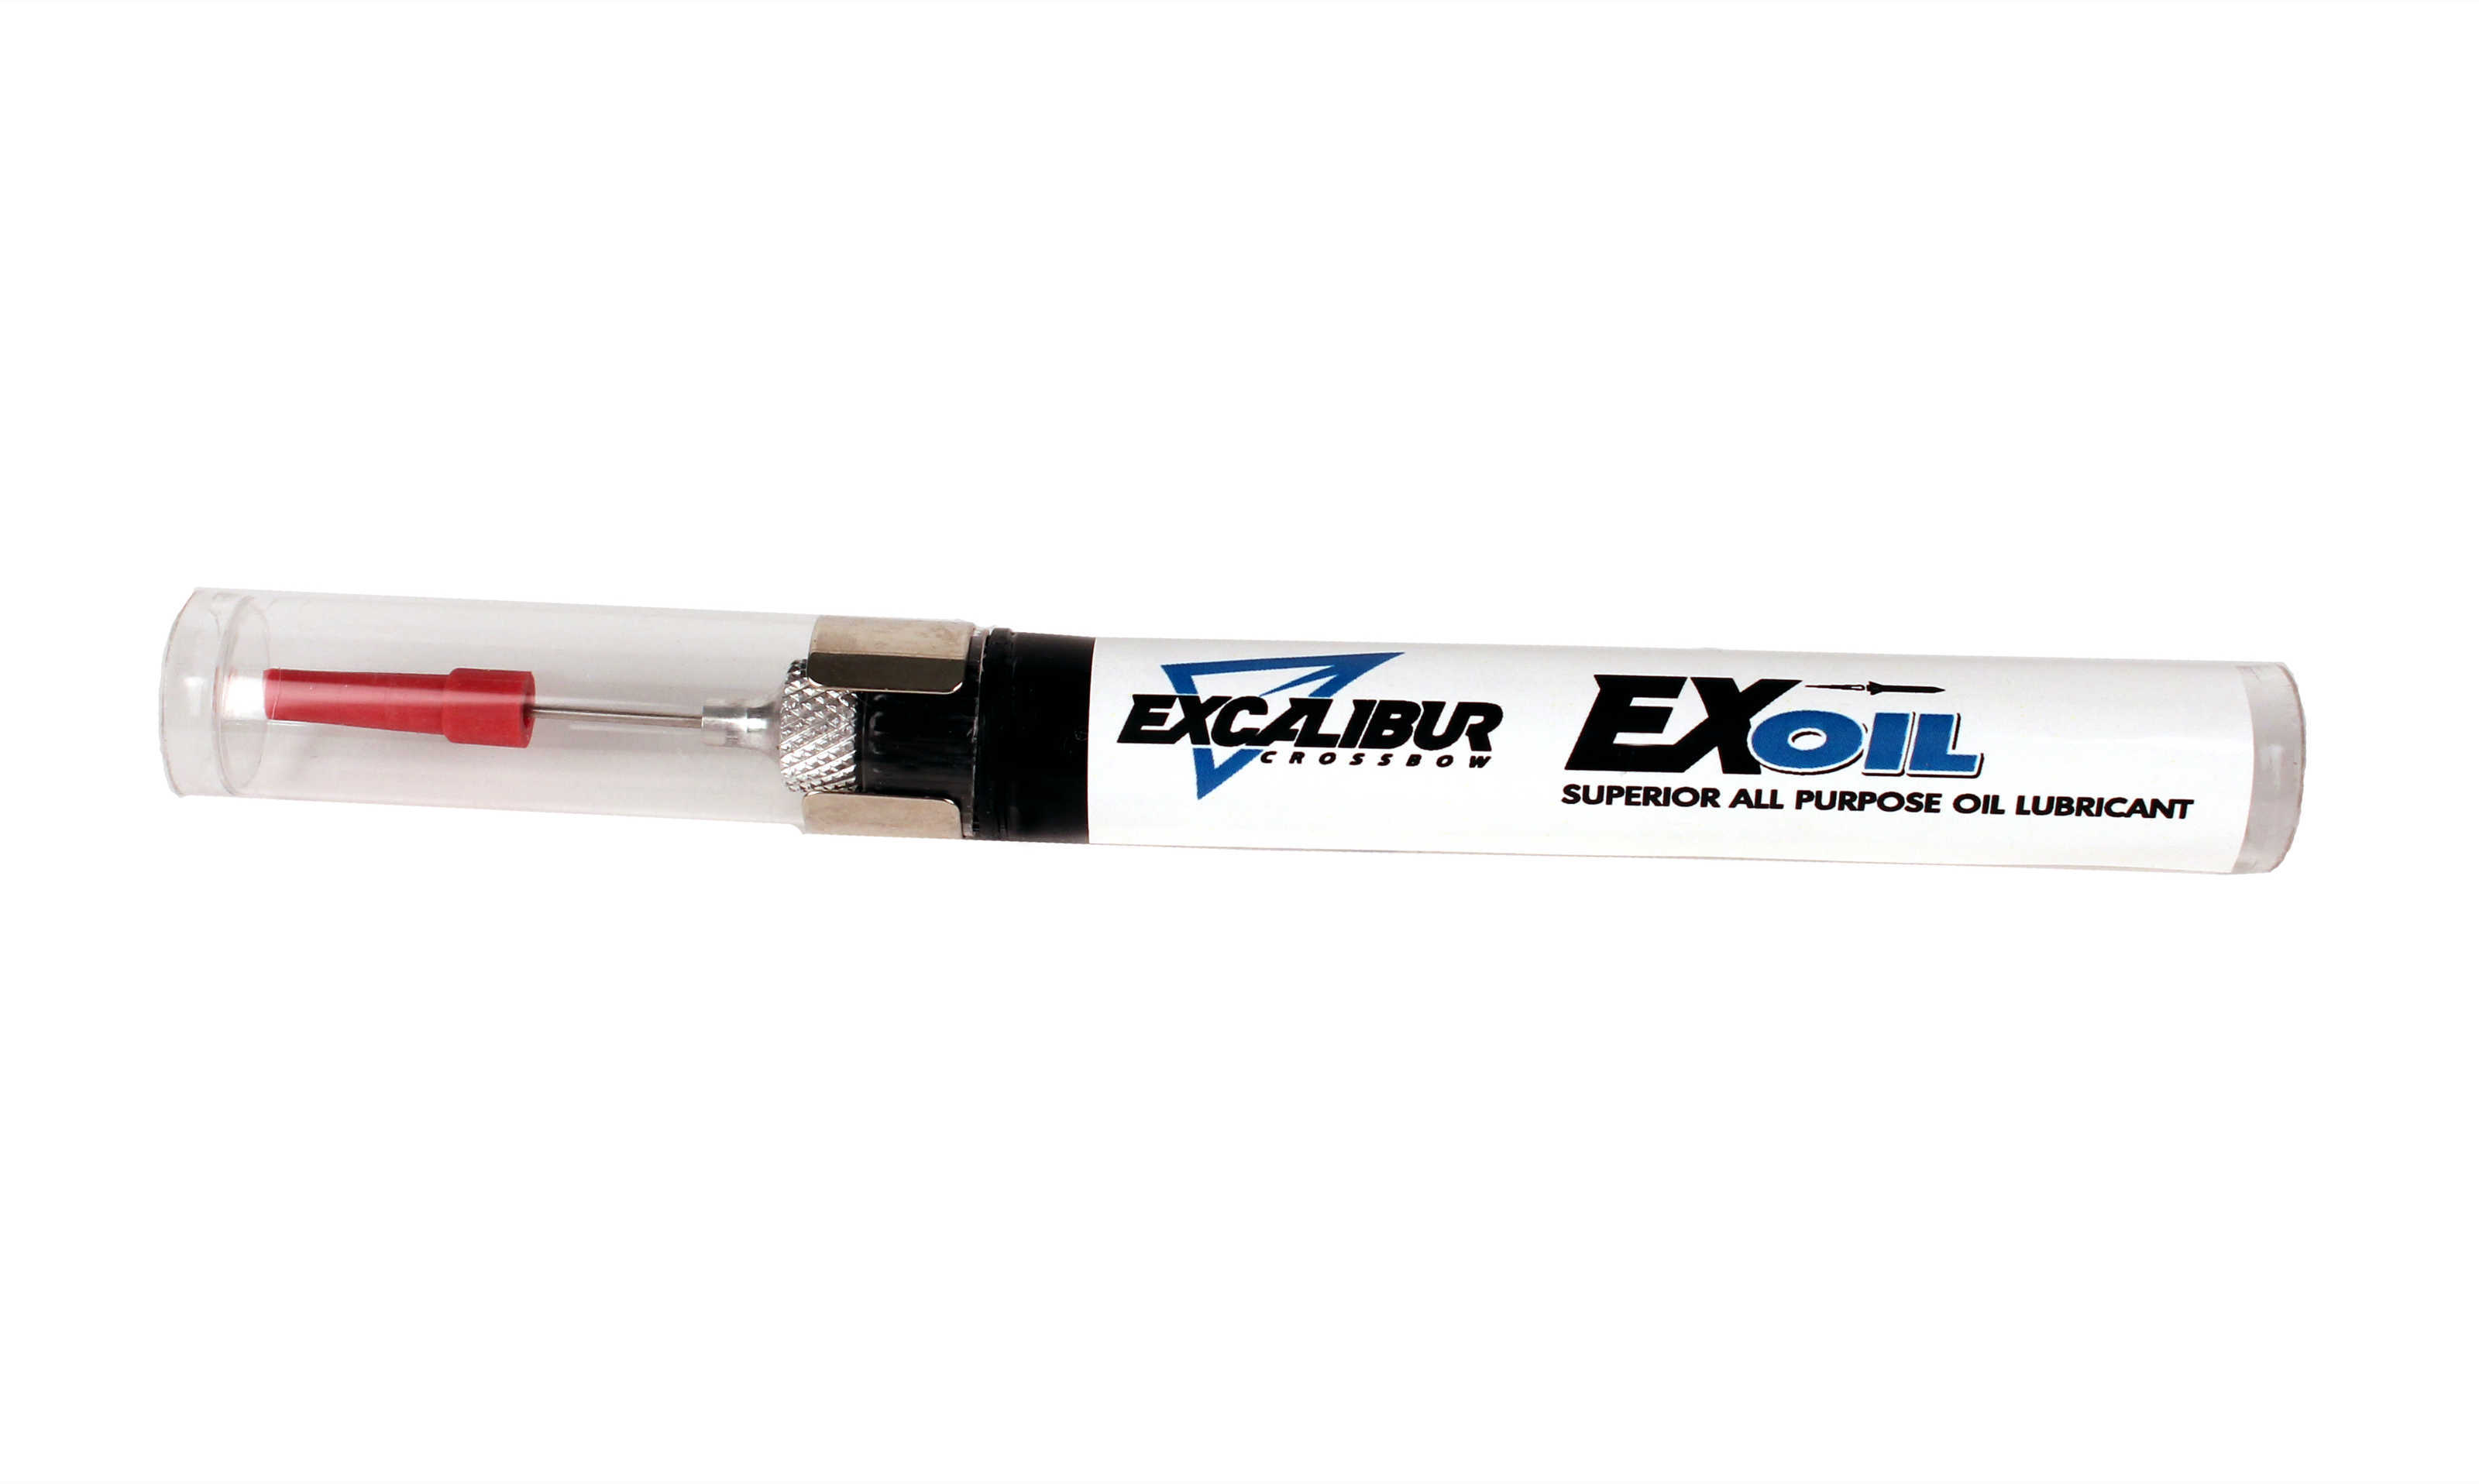 Excaliber 7010 Superior Lubrication Ex-Oil